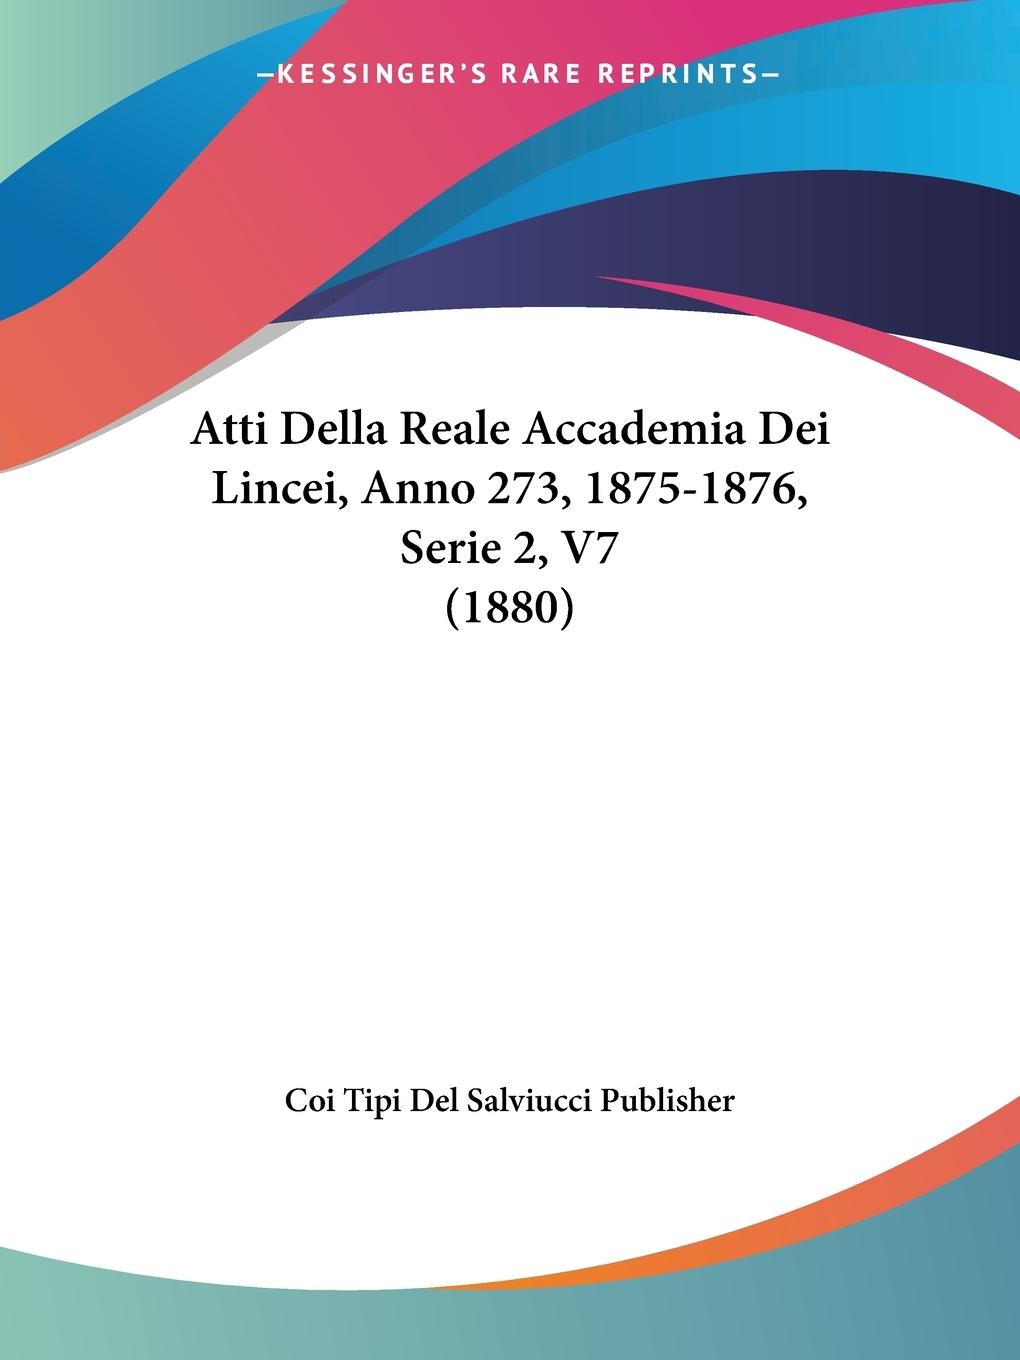 Atti Della Reale Accademia Dei Lincei, Anno 273, 1875-1876, Serie 2, V7 (1880) - Coi Tipi Del Salviucci Publisher